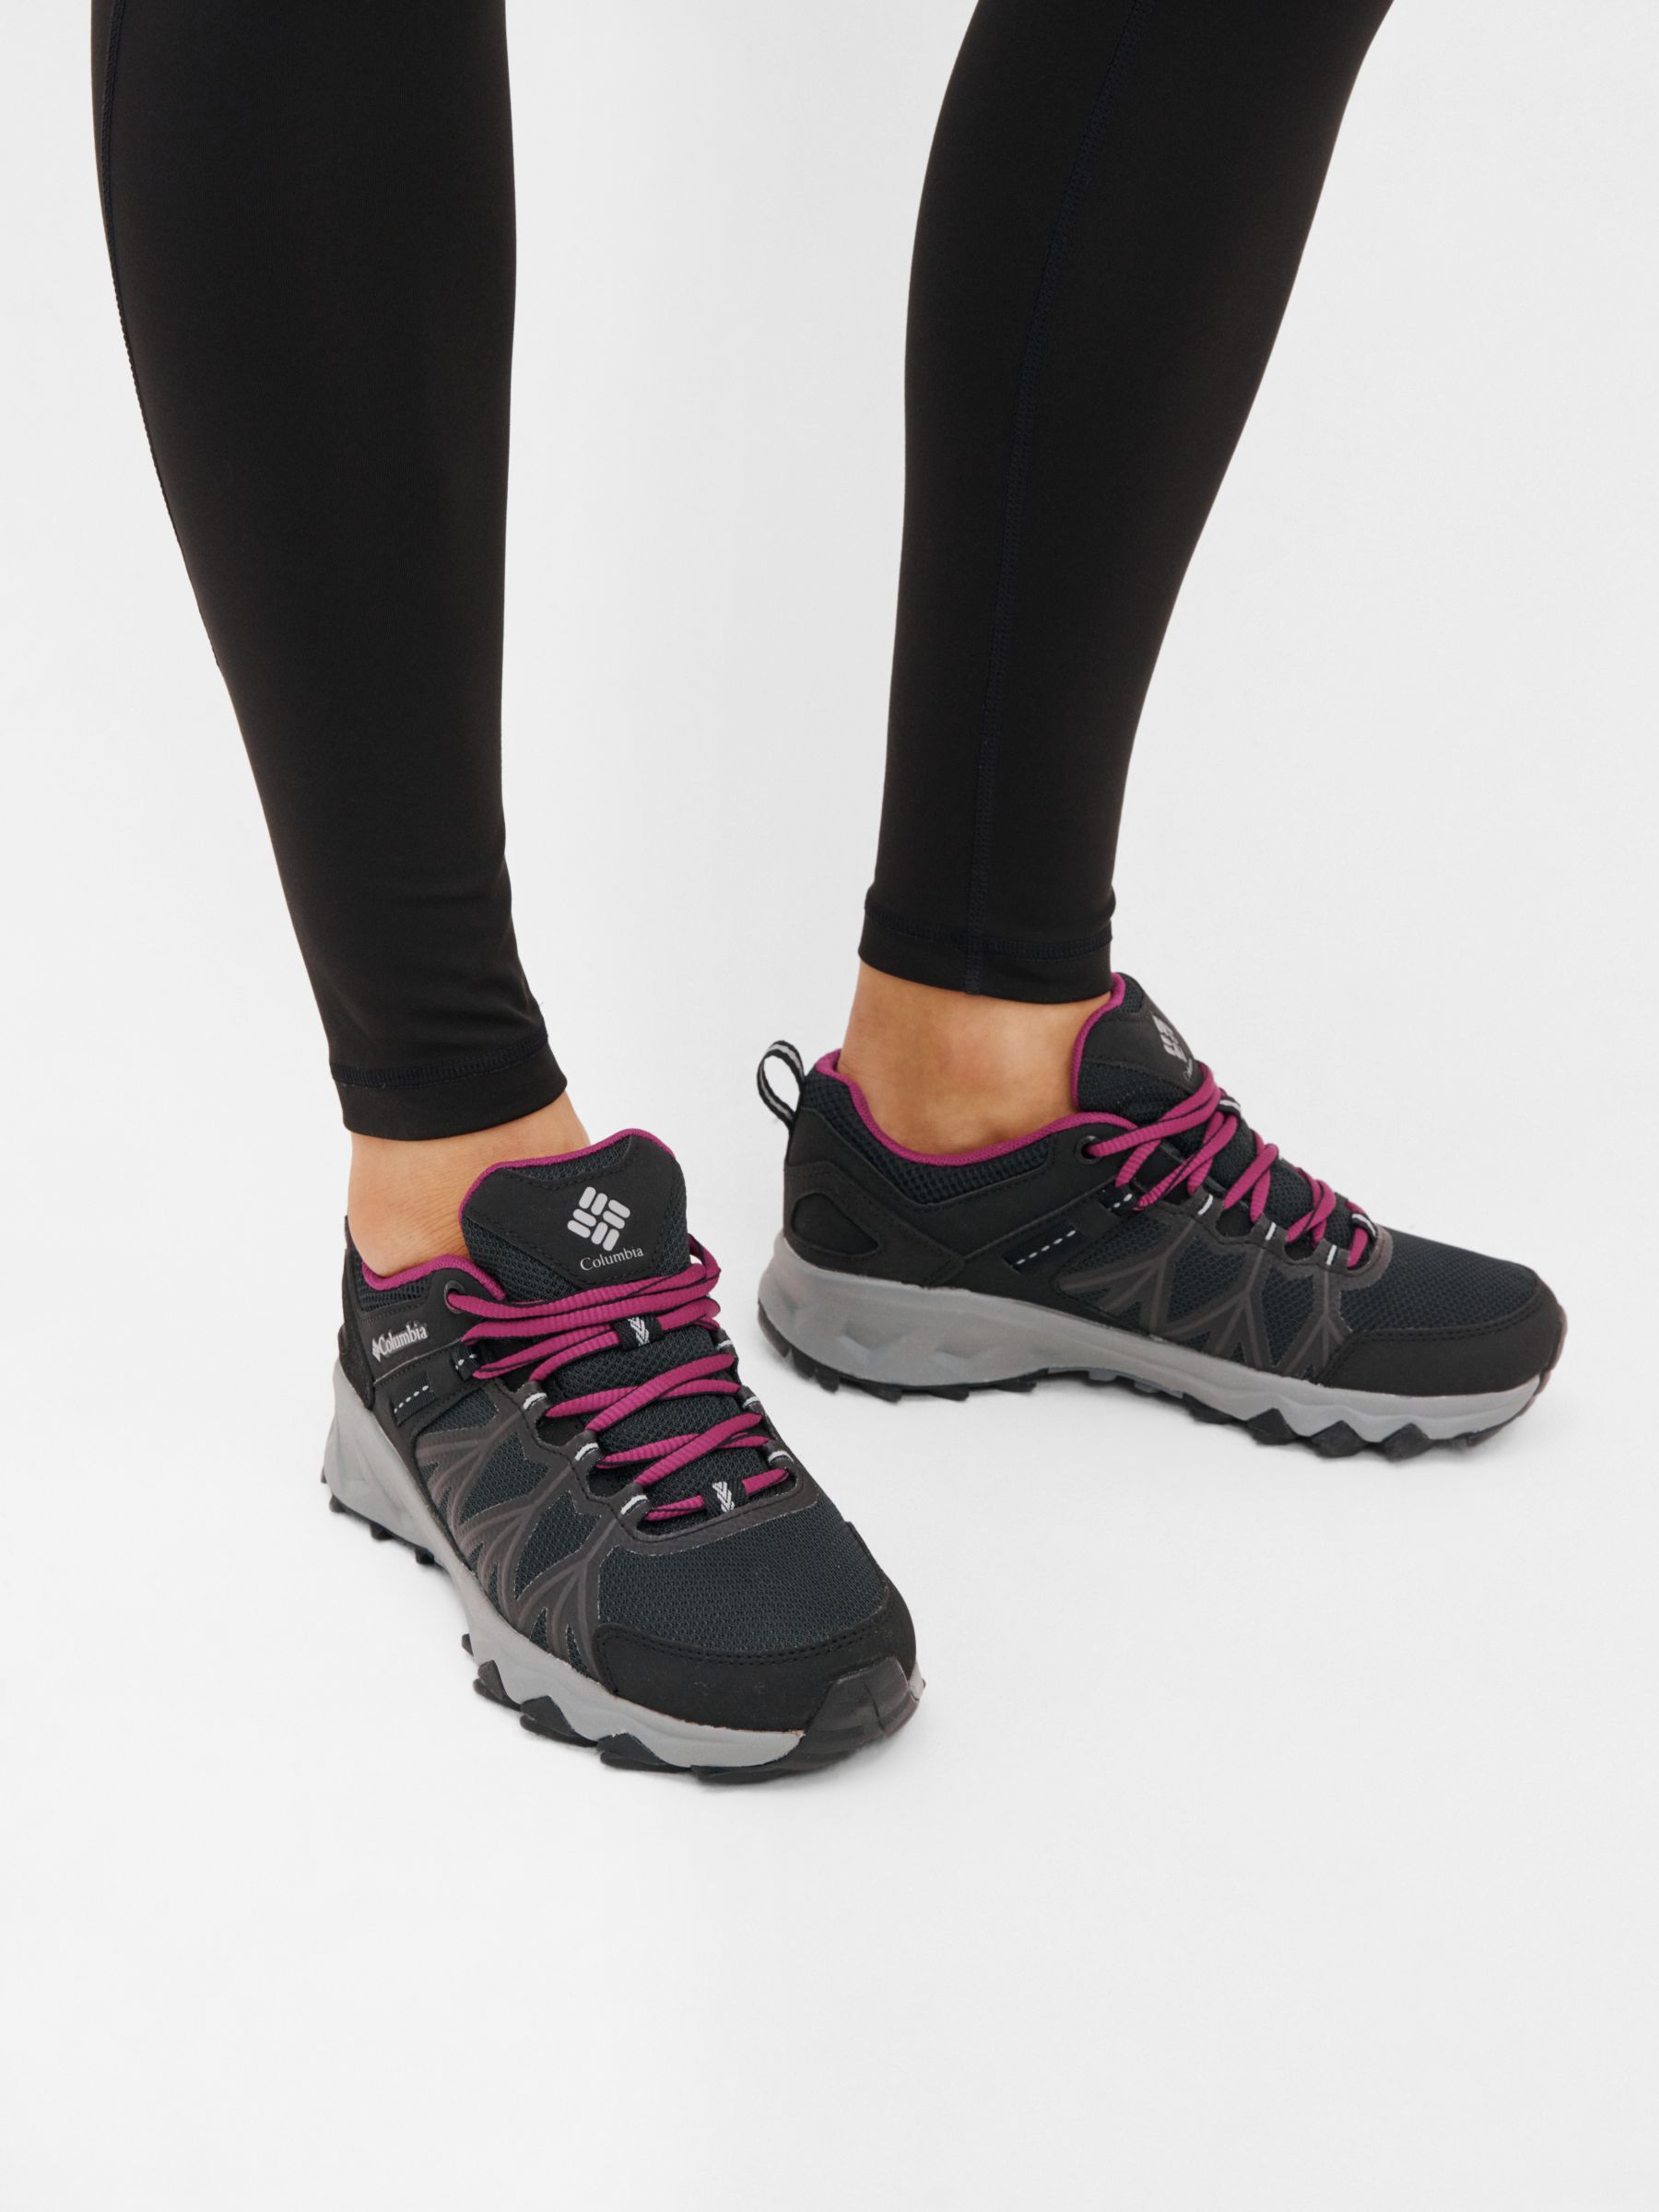 Buy Columbia Women's Peakfreak II Mid Outdry Walking Shoes, Black/Grey Steel Online at johnlewis.com